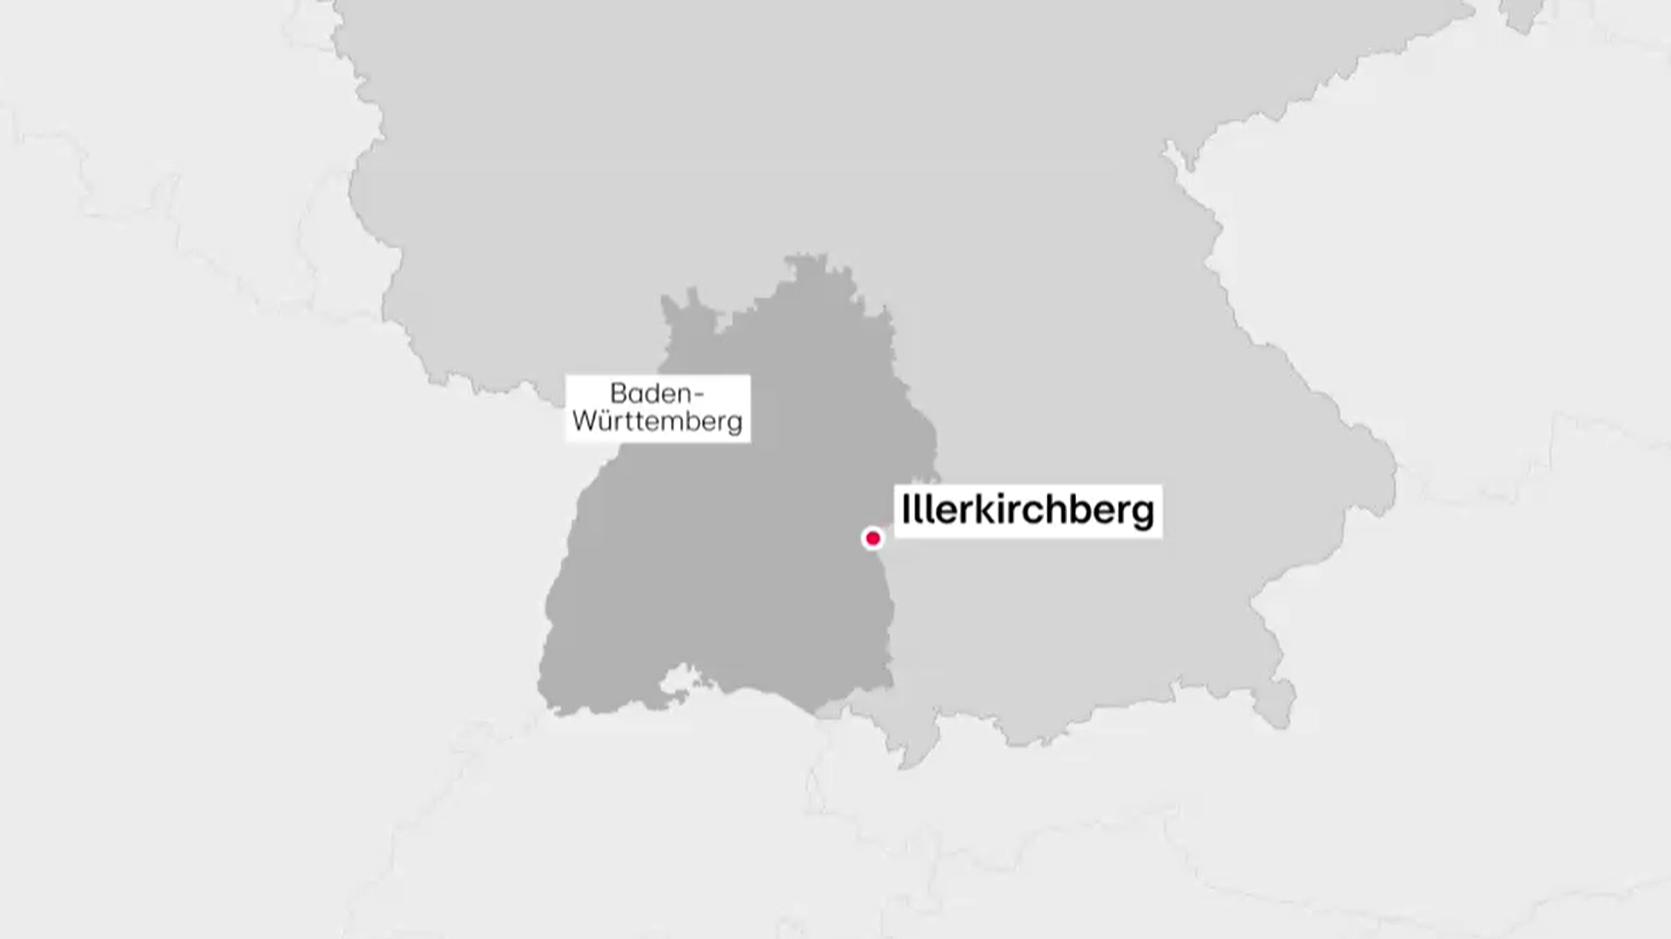 Die Mädchen wurden in Illerkirchberg angegriffen.